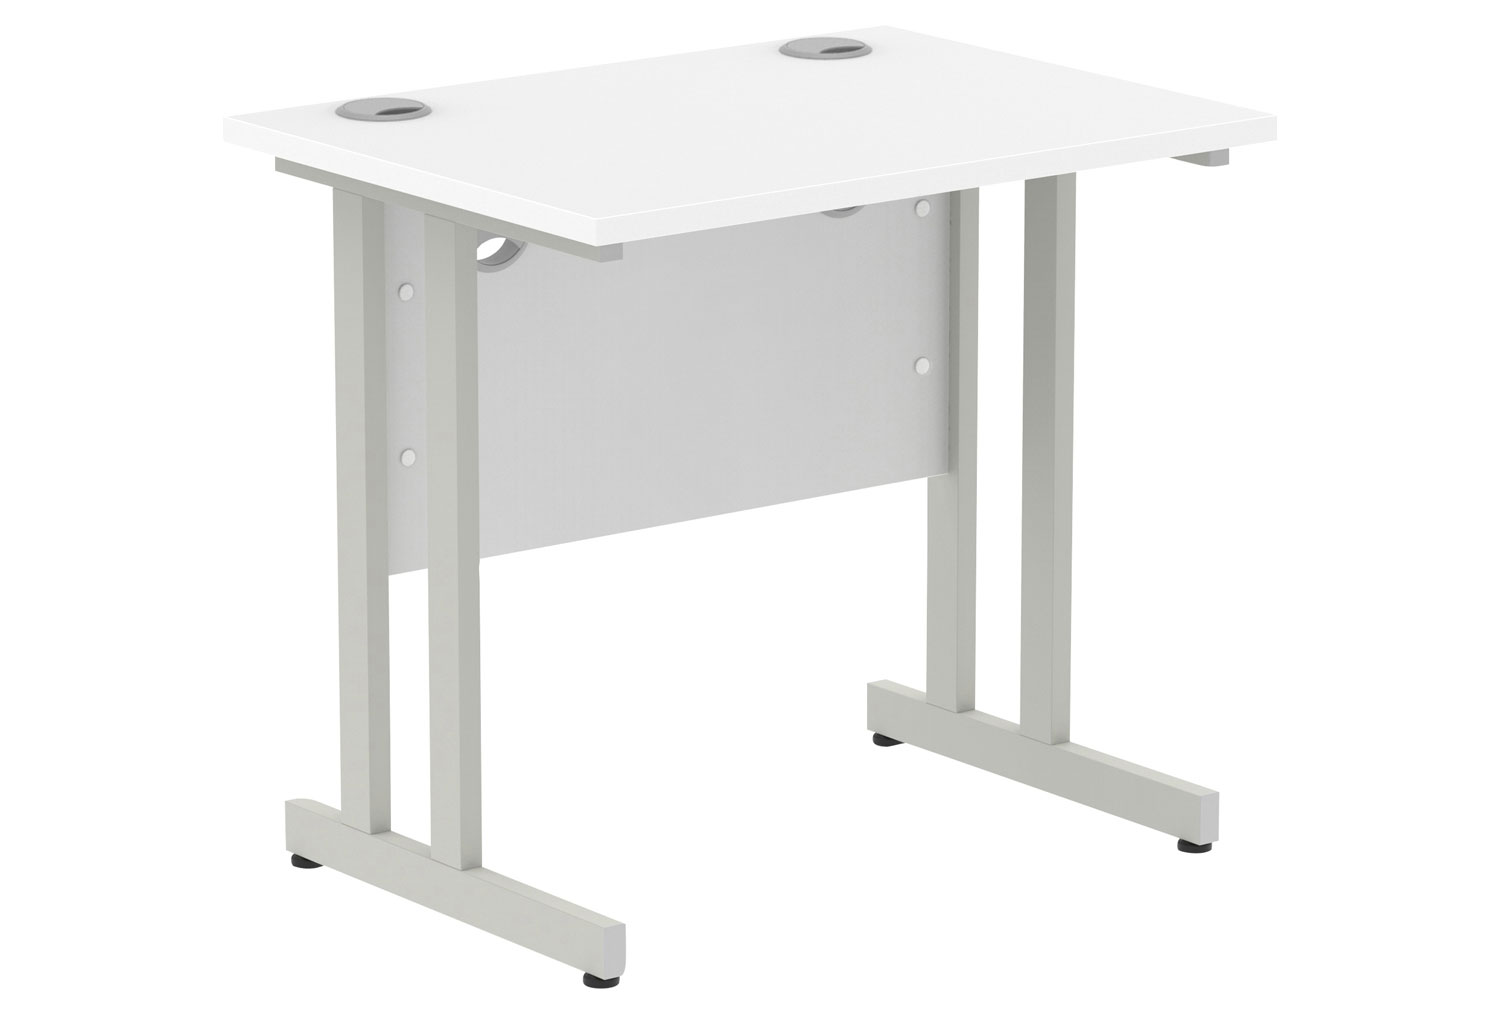 Vitali C-Leg Narrow Rectangular Office Desk (Silver Legs), 80wx60dx73h (cm), White